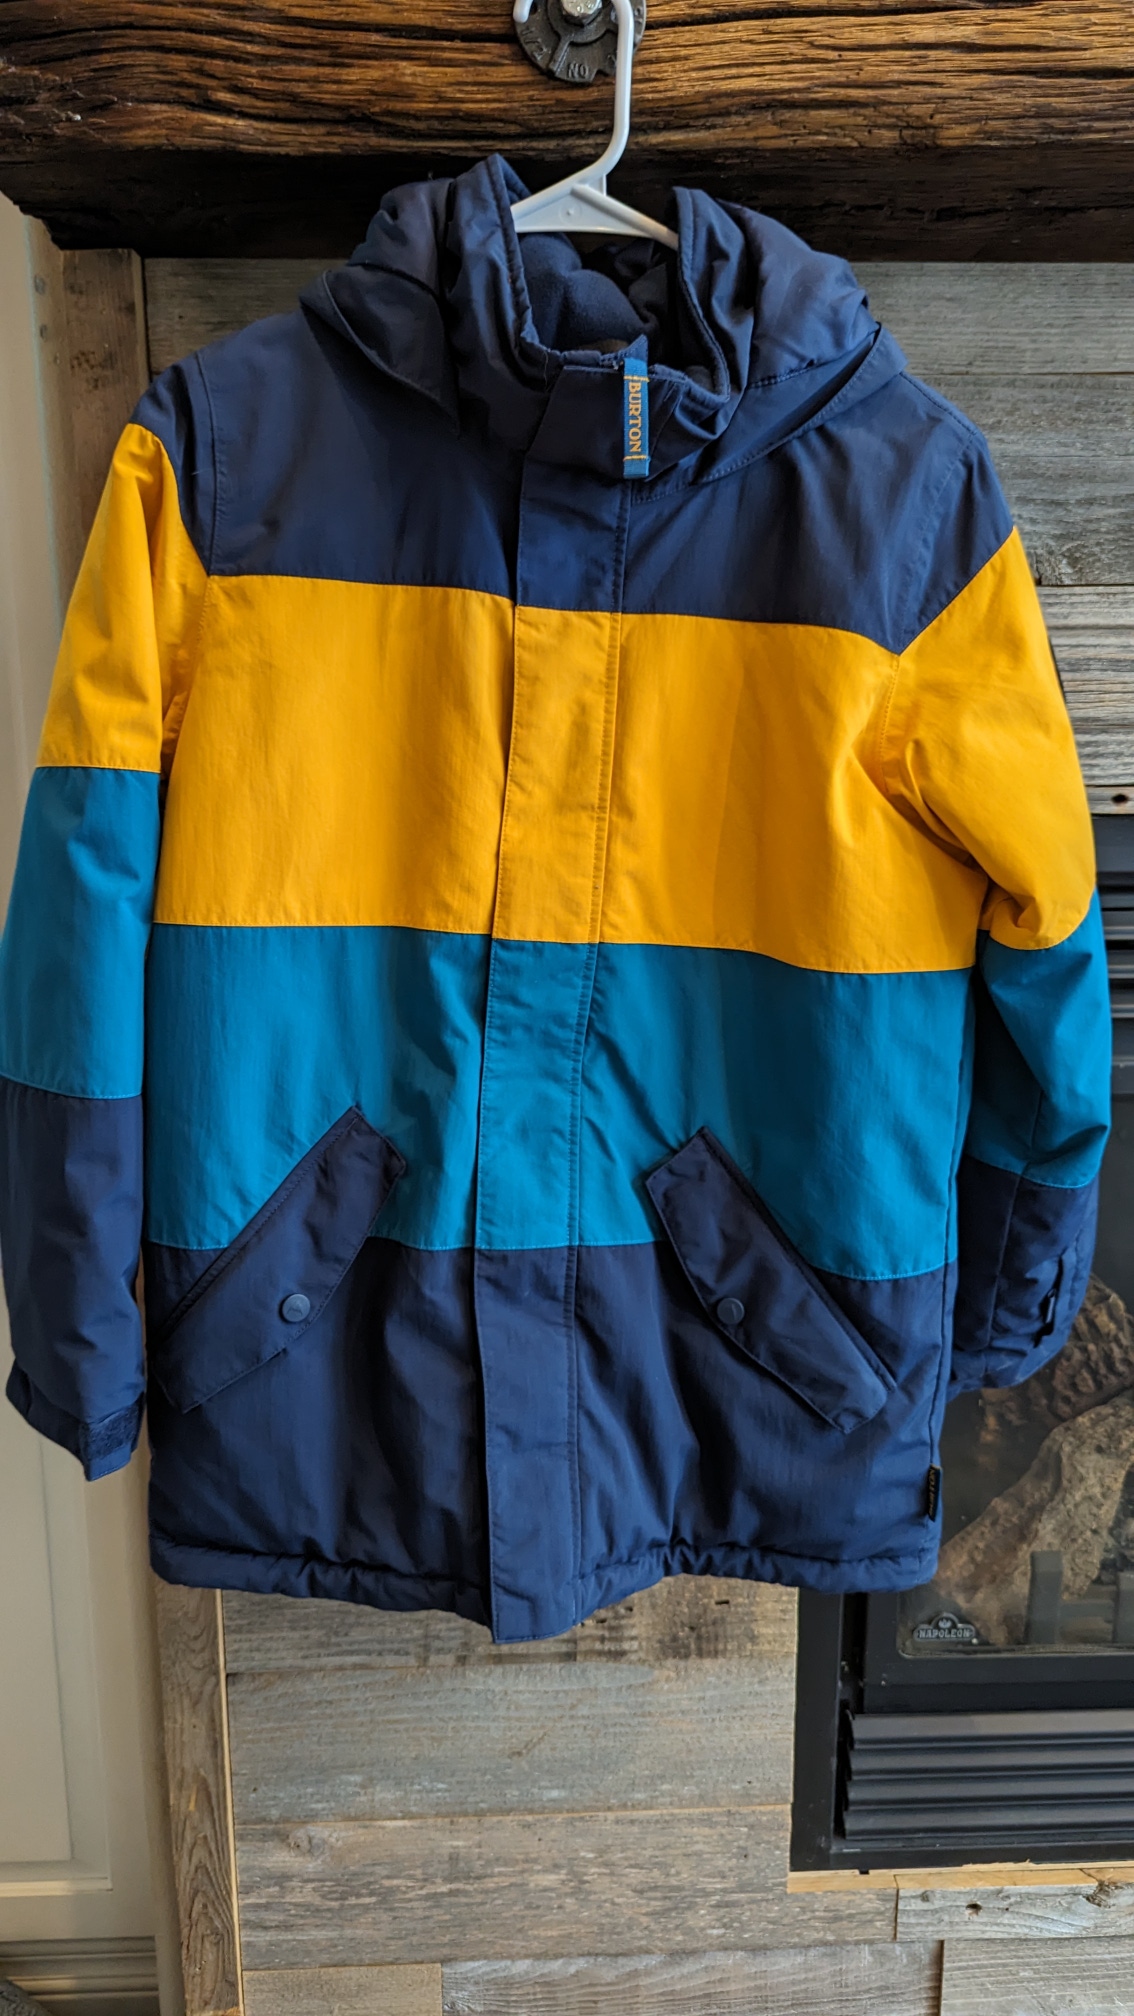 Unisex Youth Used XL Burton Jacket